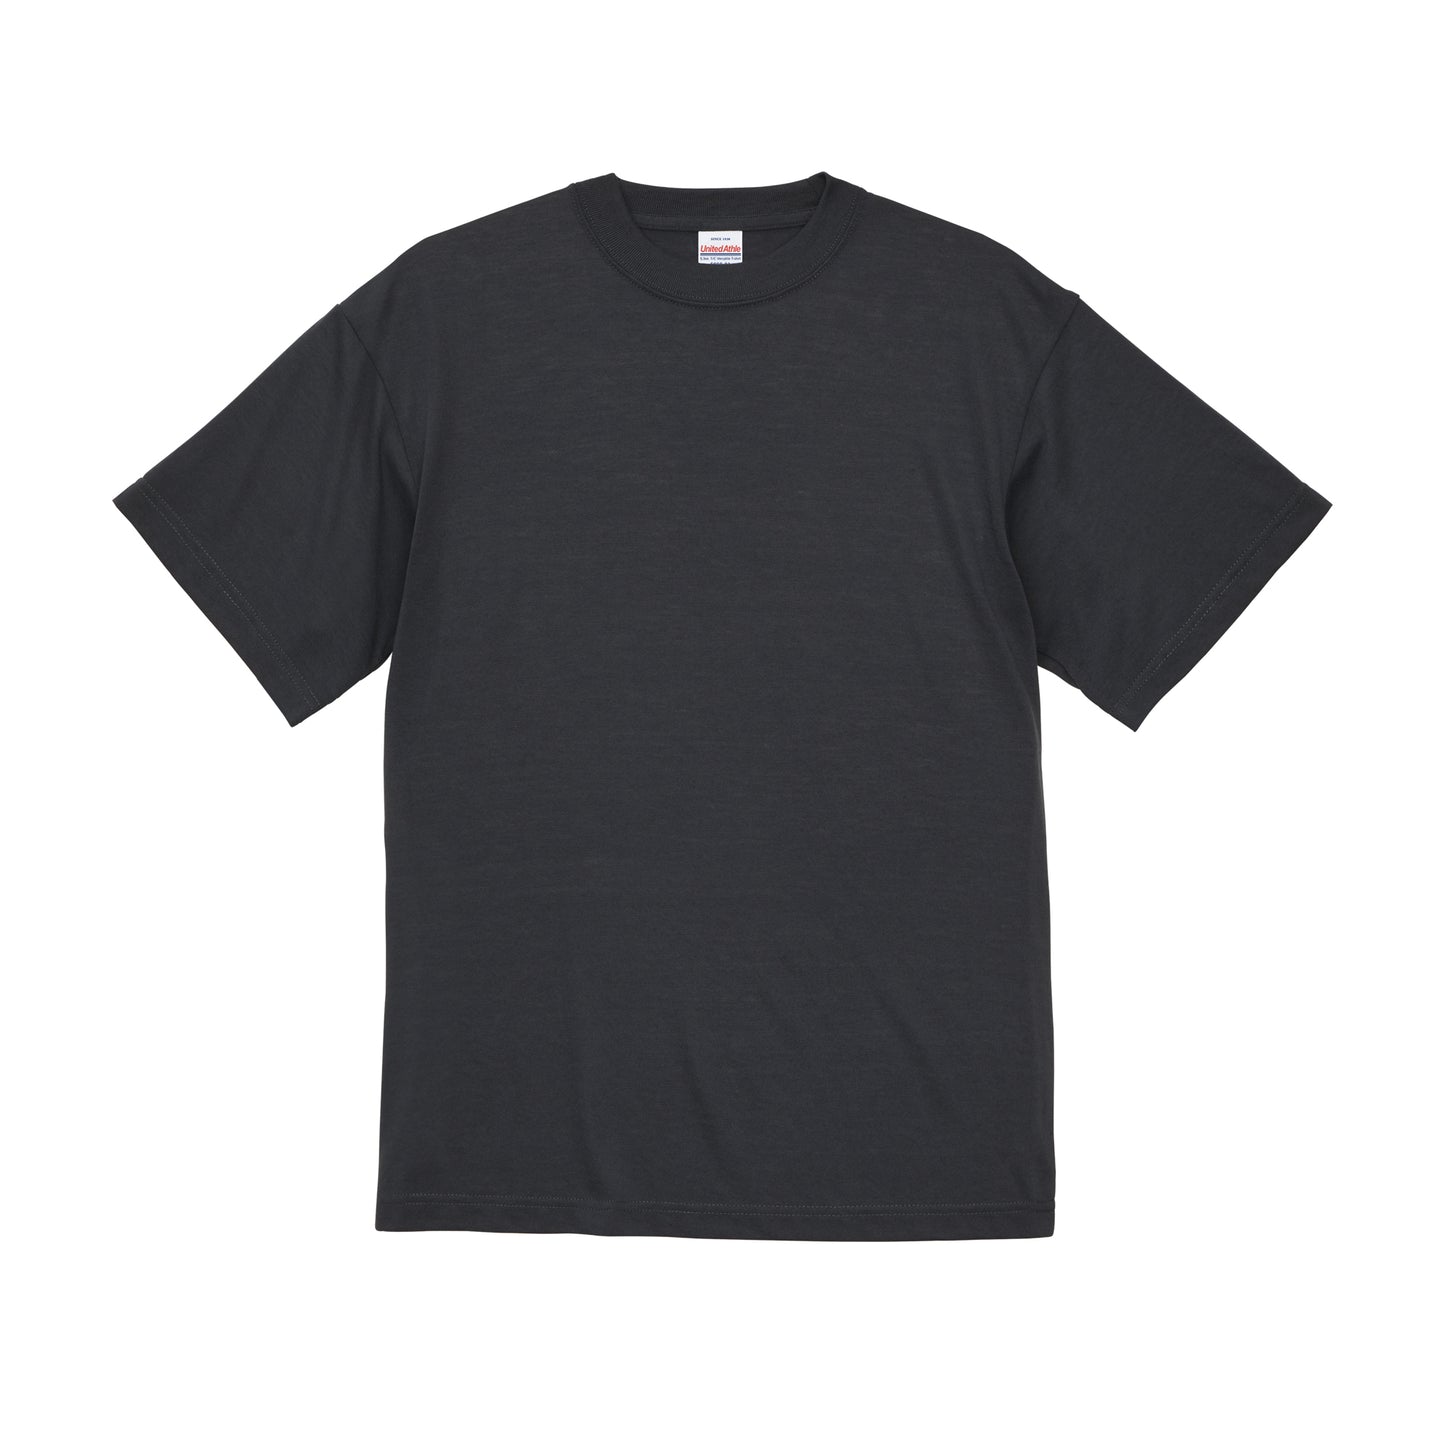 5.3oz T/C バーサタイル Tシャツ (UA-5888-01)